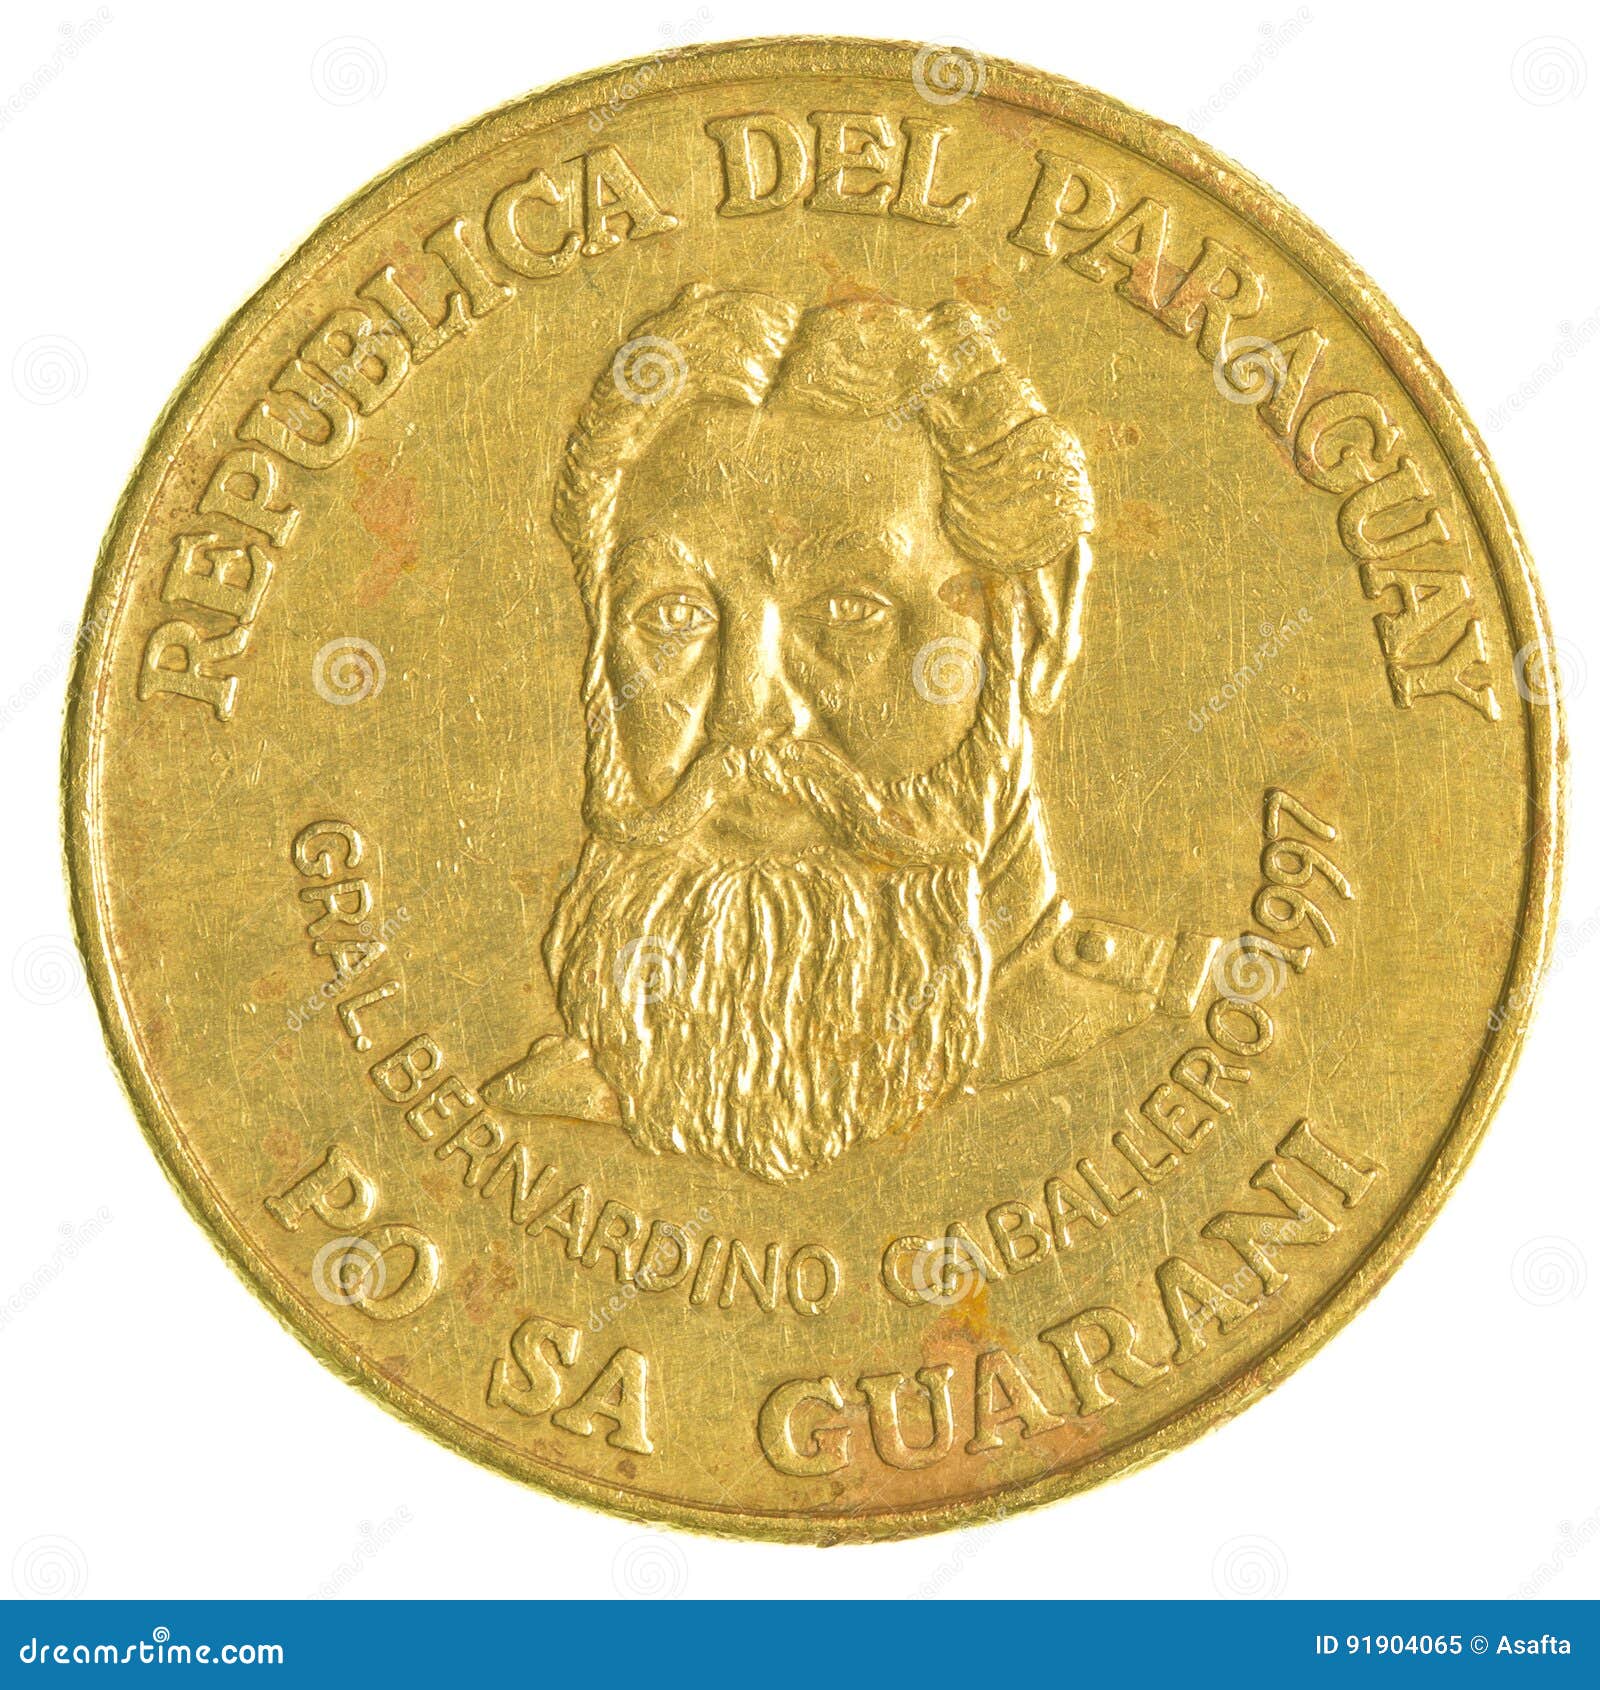 500 paraguayan guaranies coin